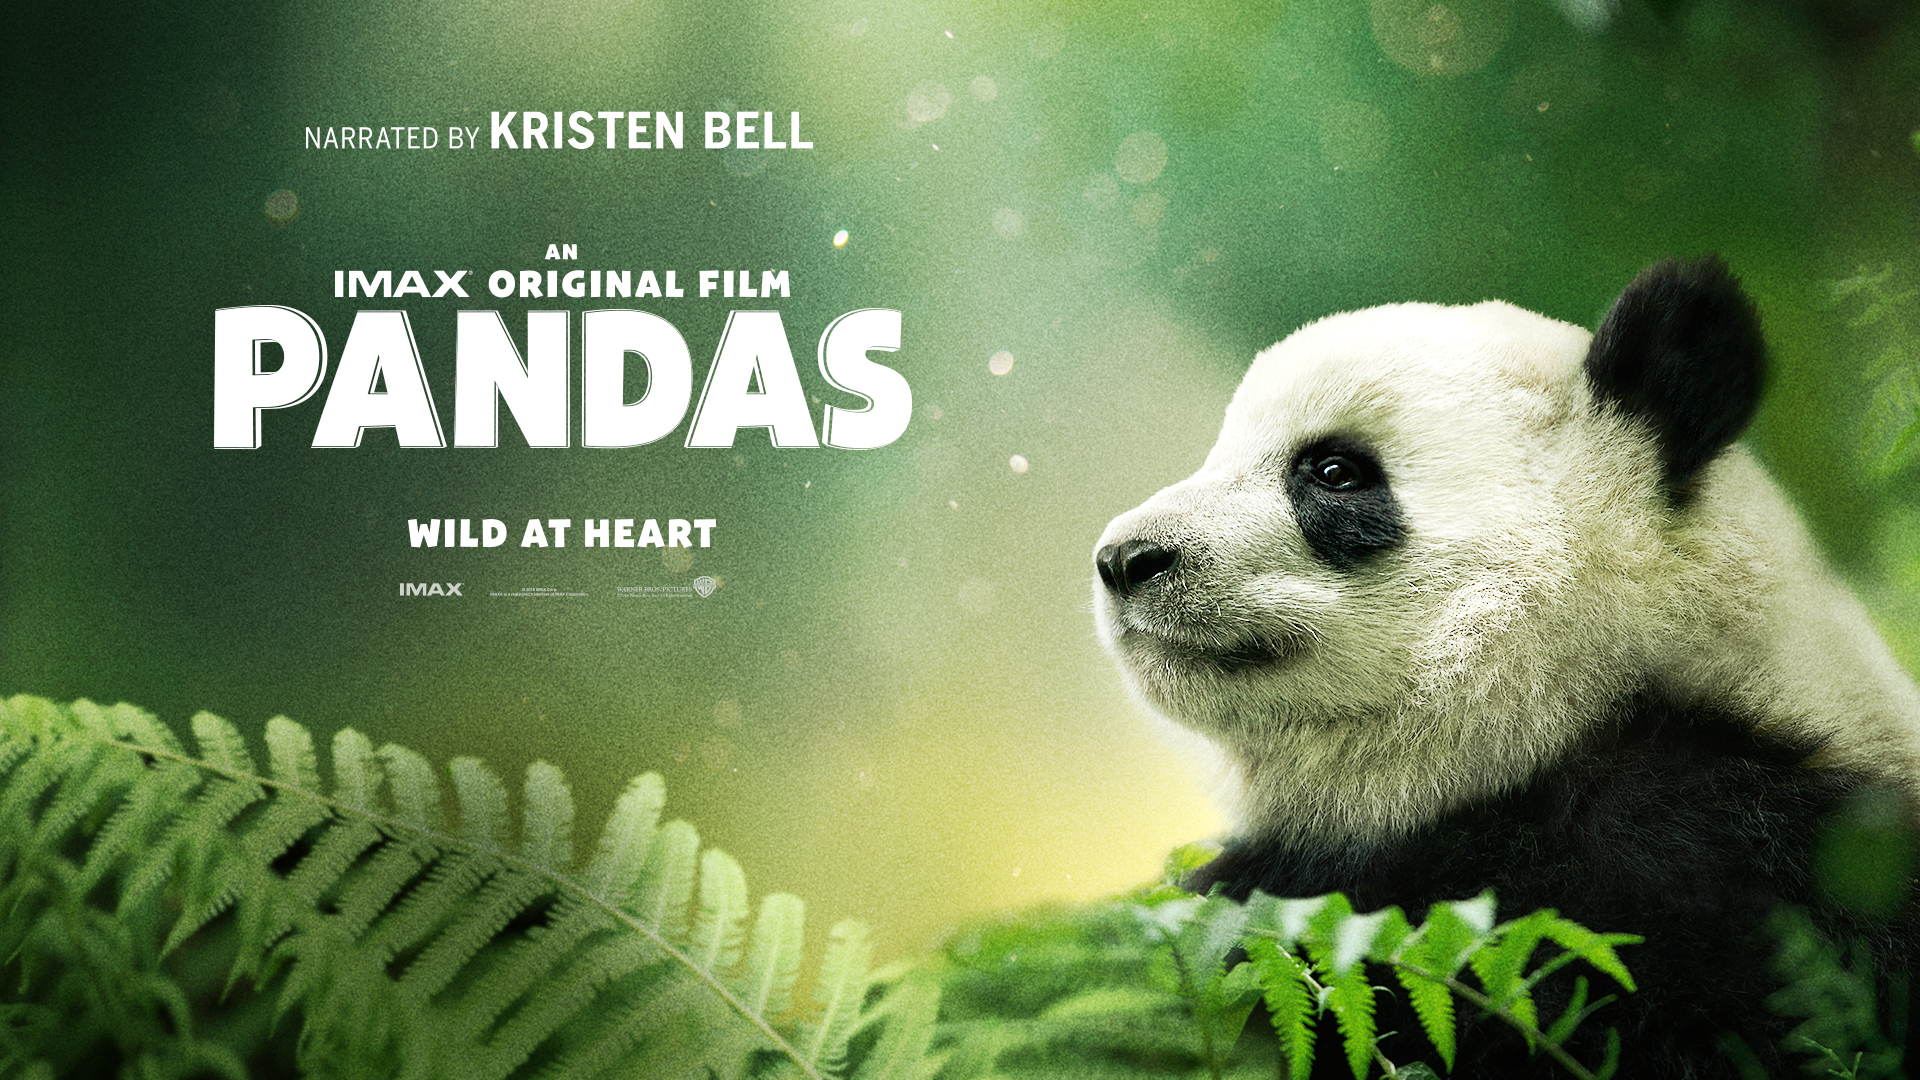 IMAX Pandas Review